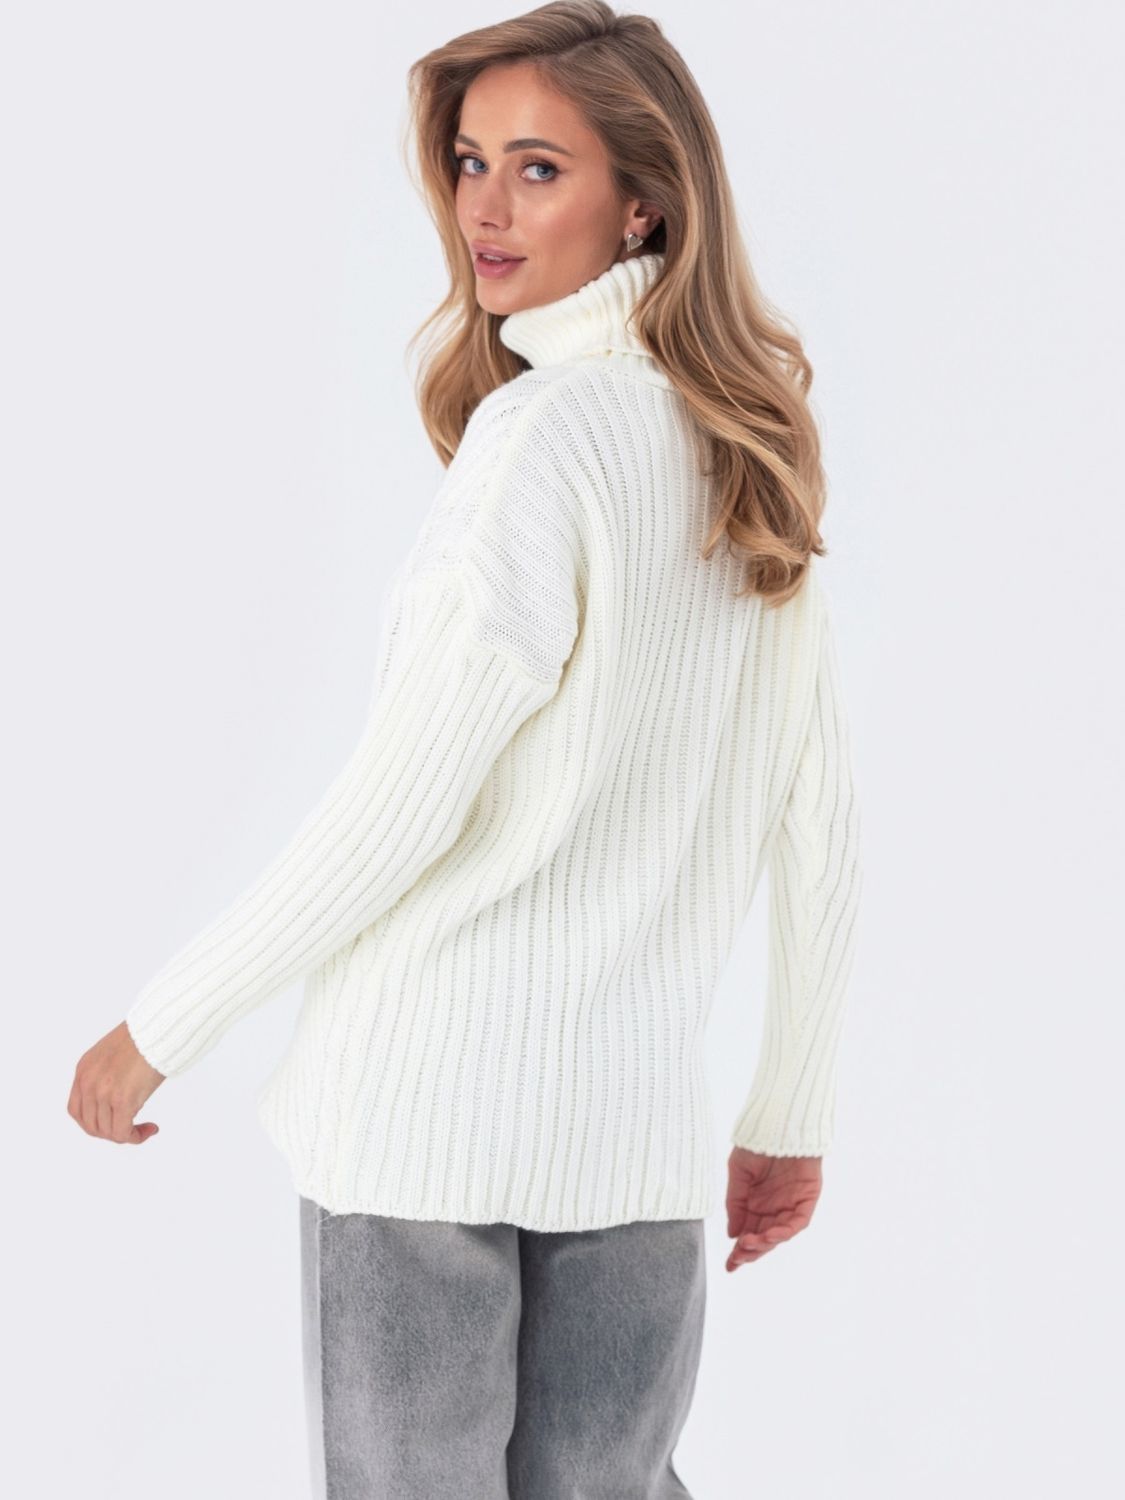 Вязаный свитер с высоким горлом молочного цвета - фото